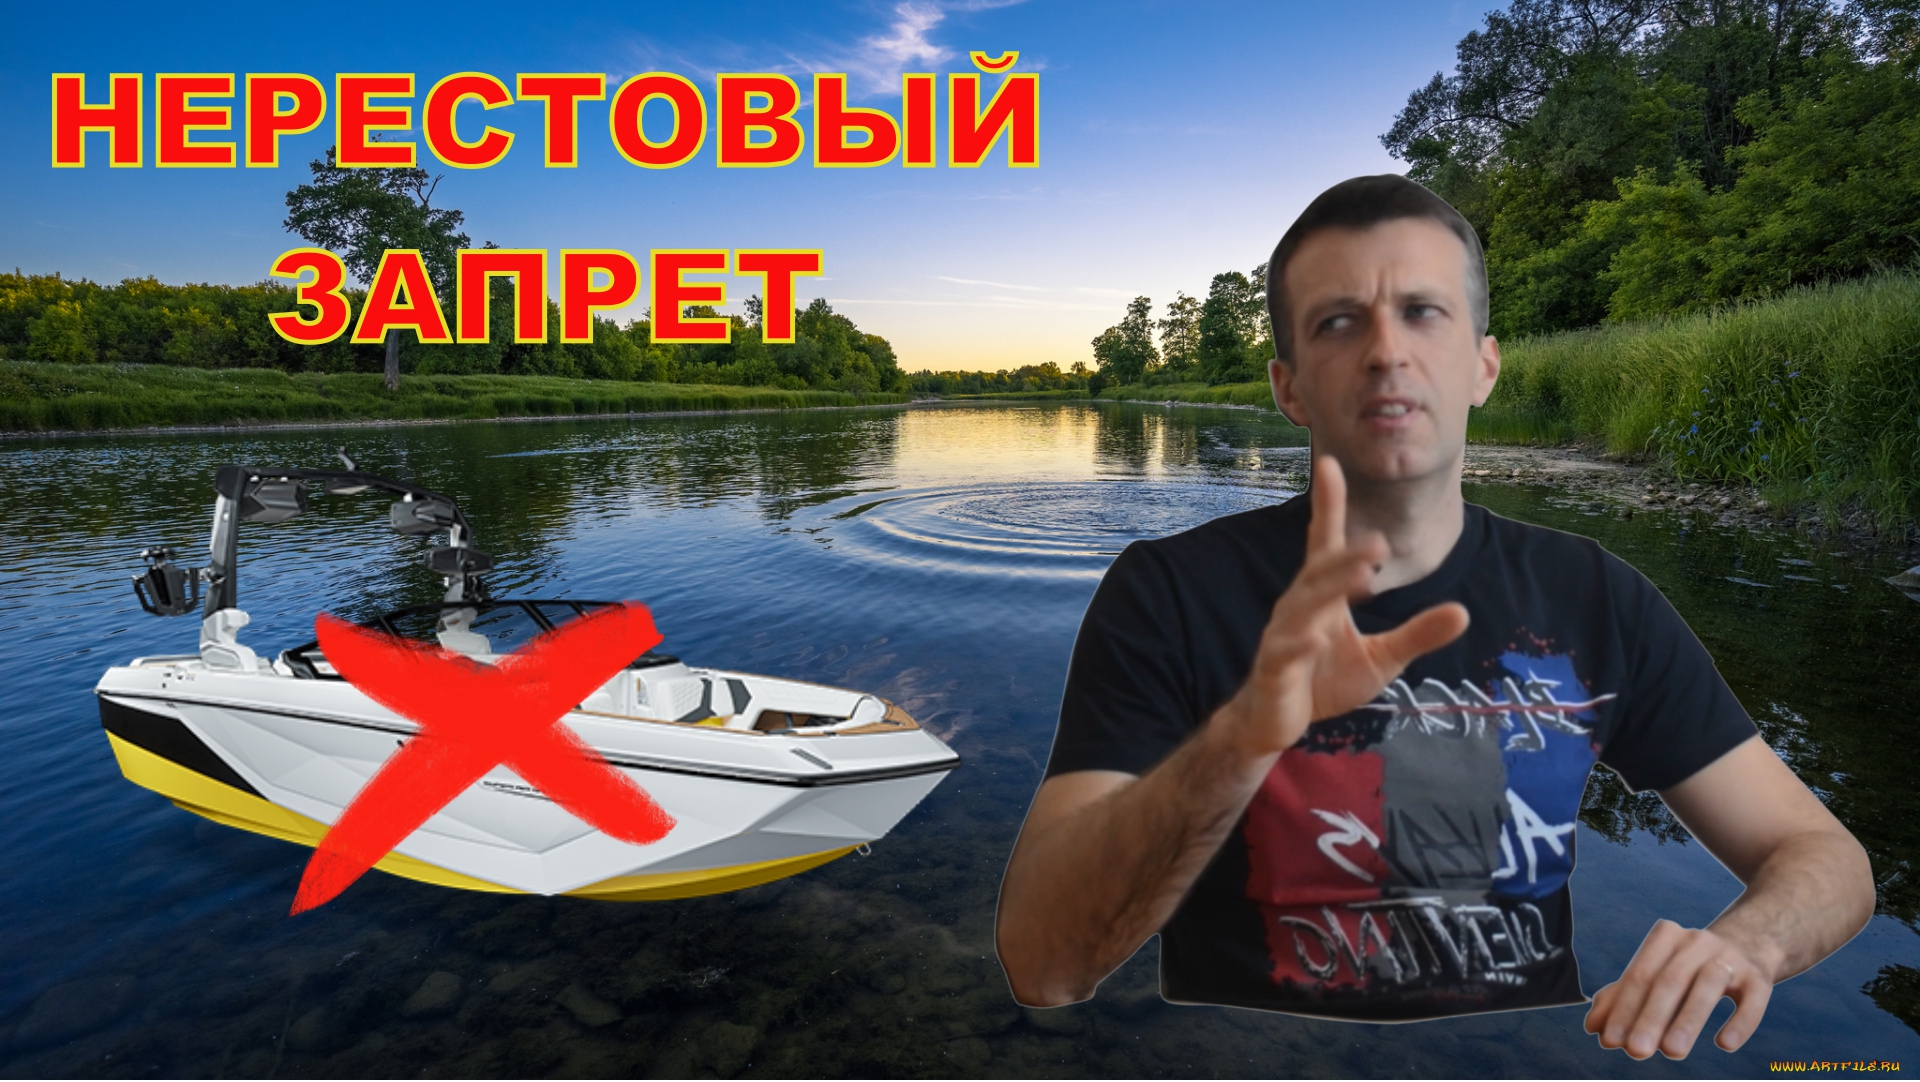 Запрет на лодке в беларуси. Запрет на лодки. Нерестовый запрет. Нерестовый запрет в 2023 году. День рыбинспекции в России.